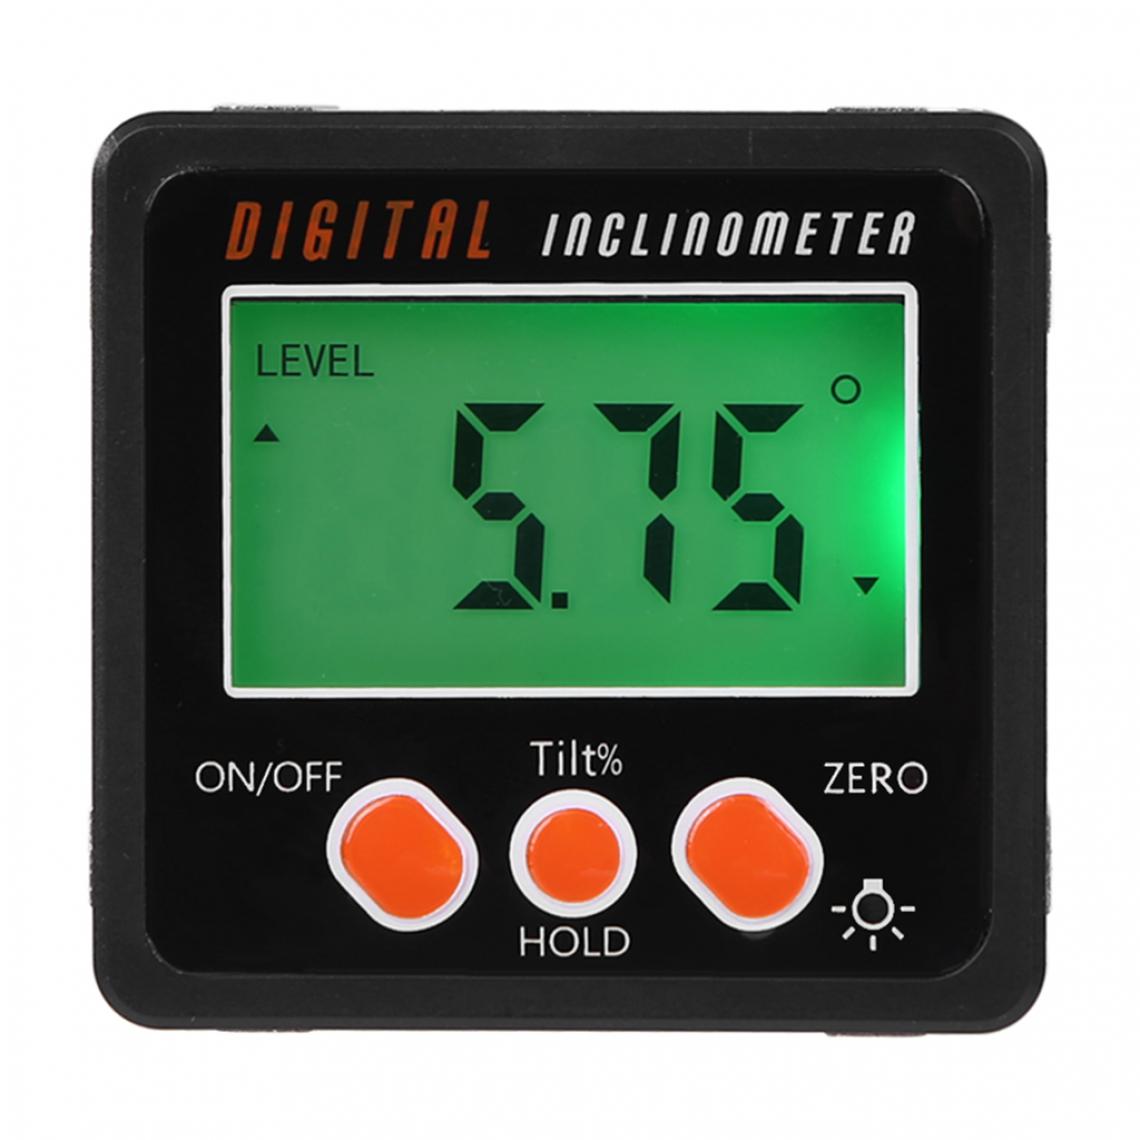 marque generique - LED Digital Inclinometer Level Box Jauge Angle Meter Finder Rapporteur Noir - Détecteur connecté